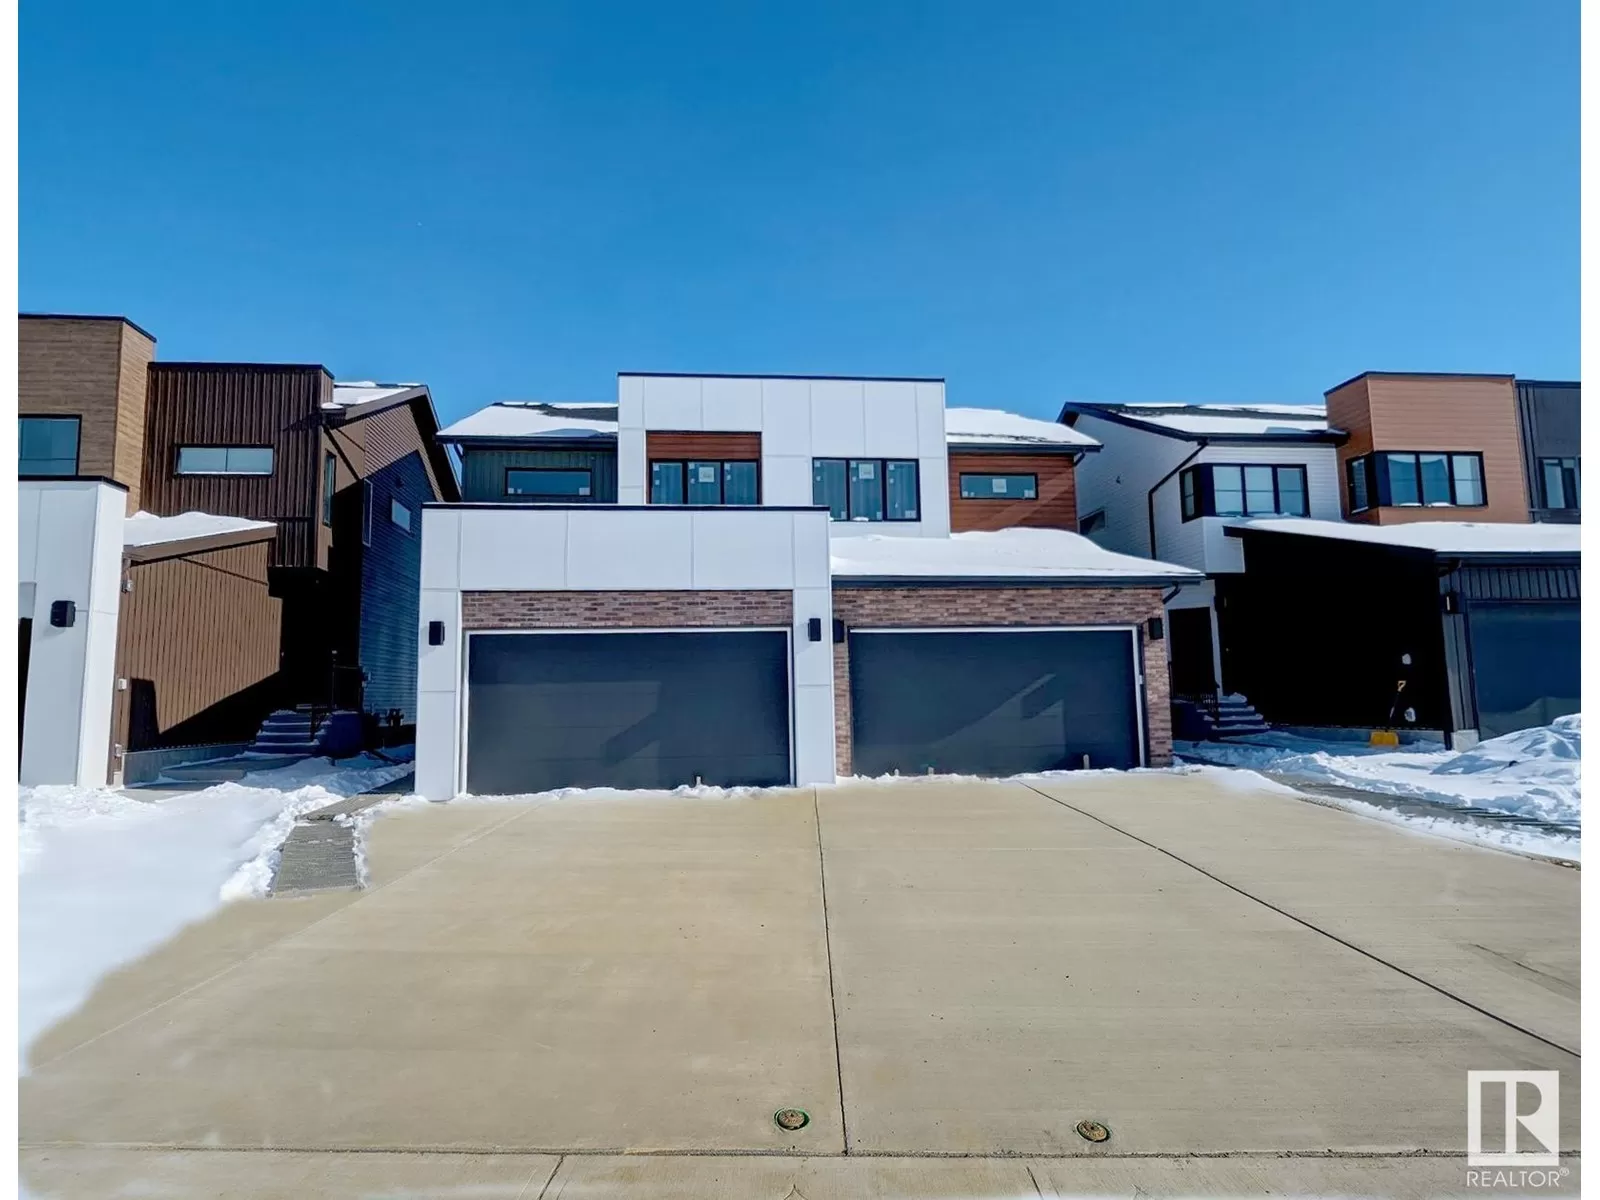 Duplex for rent: 163 Edison Drive, St. Albert, Alberta T8N 4J6